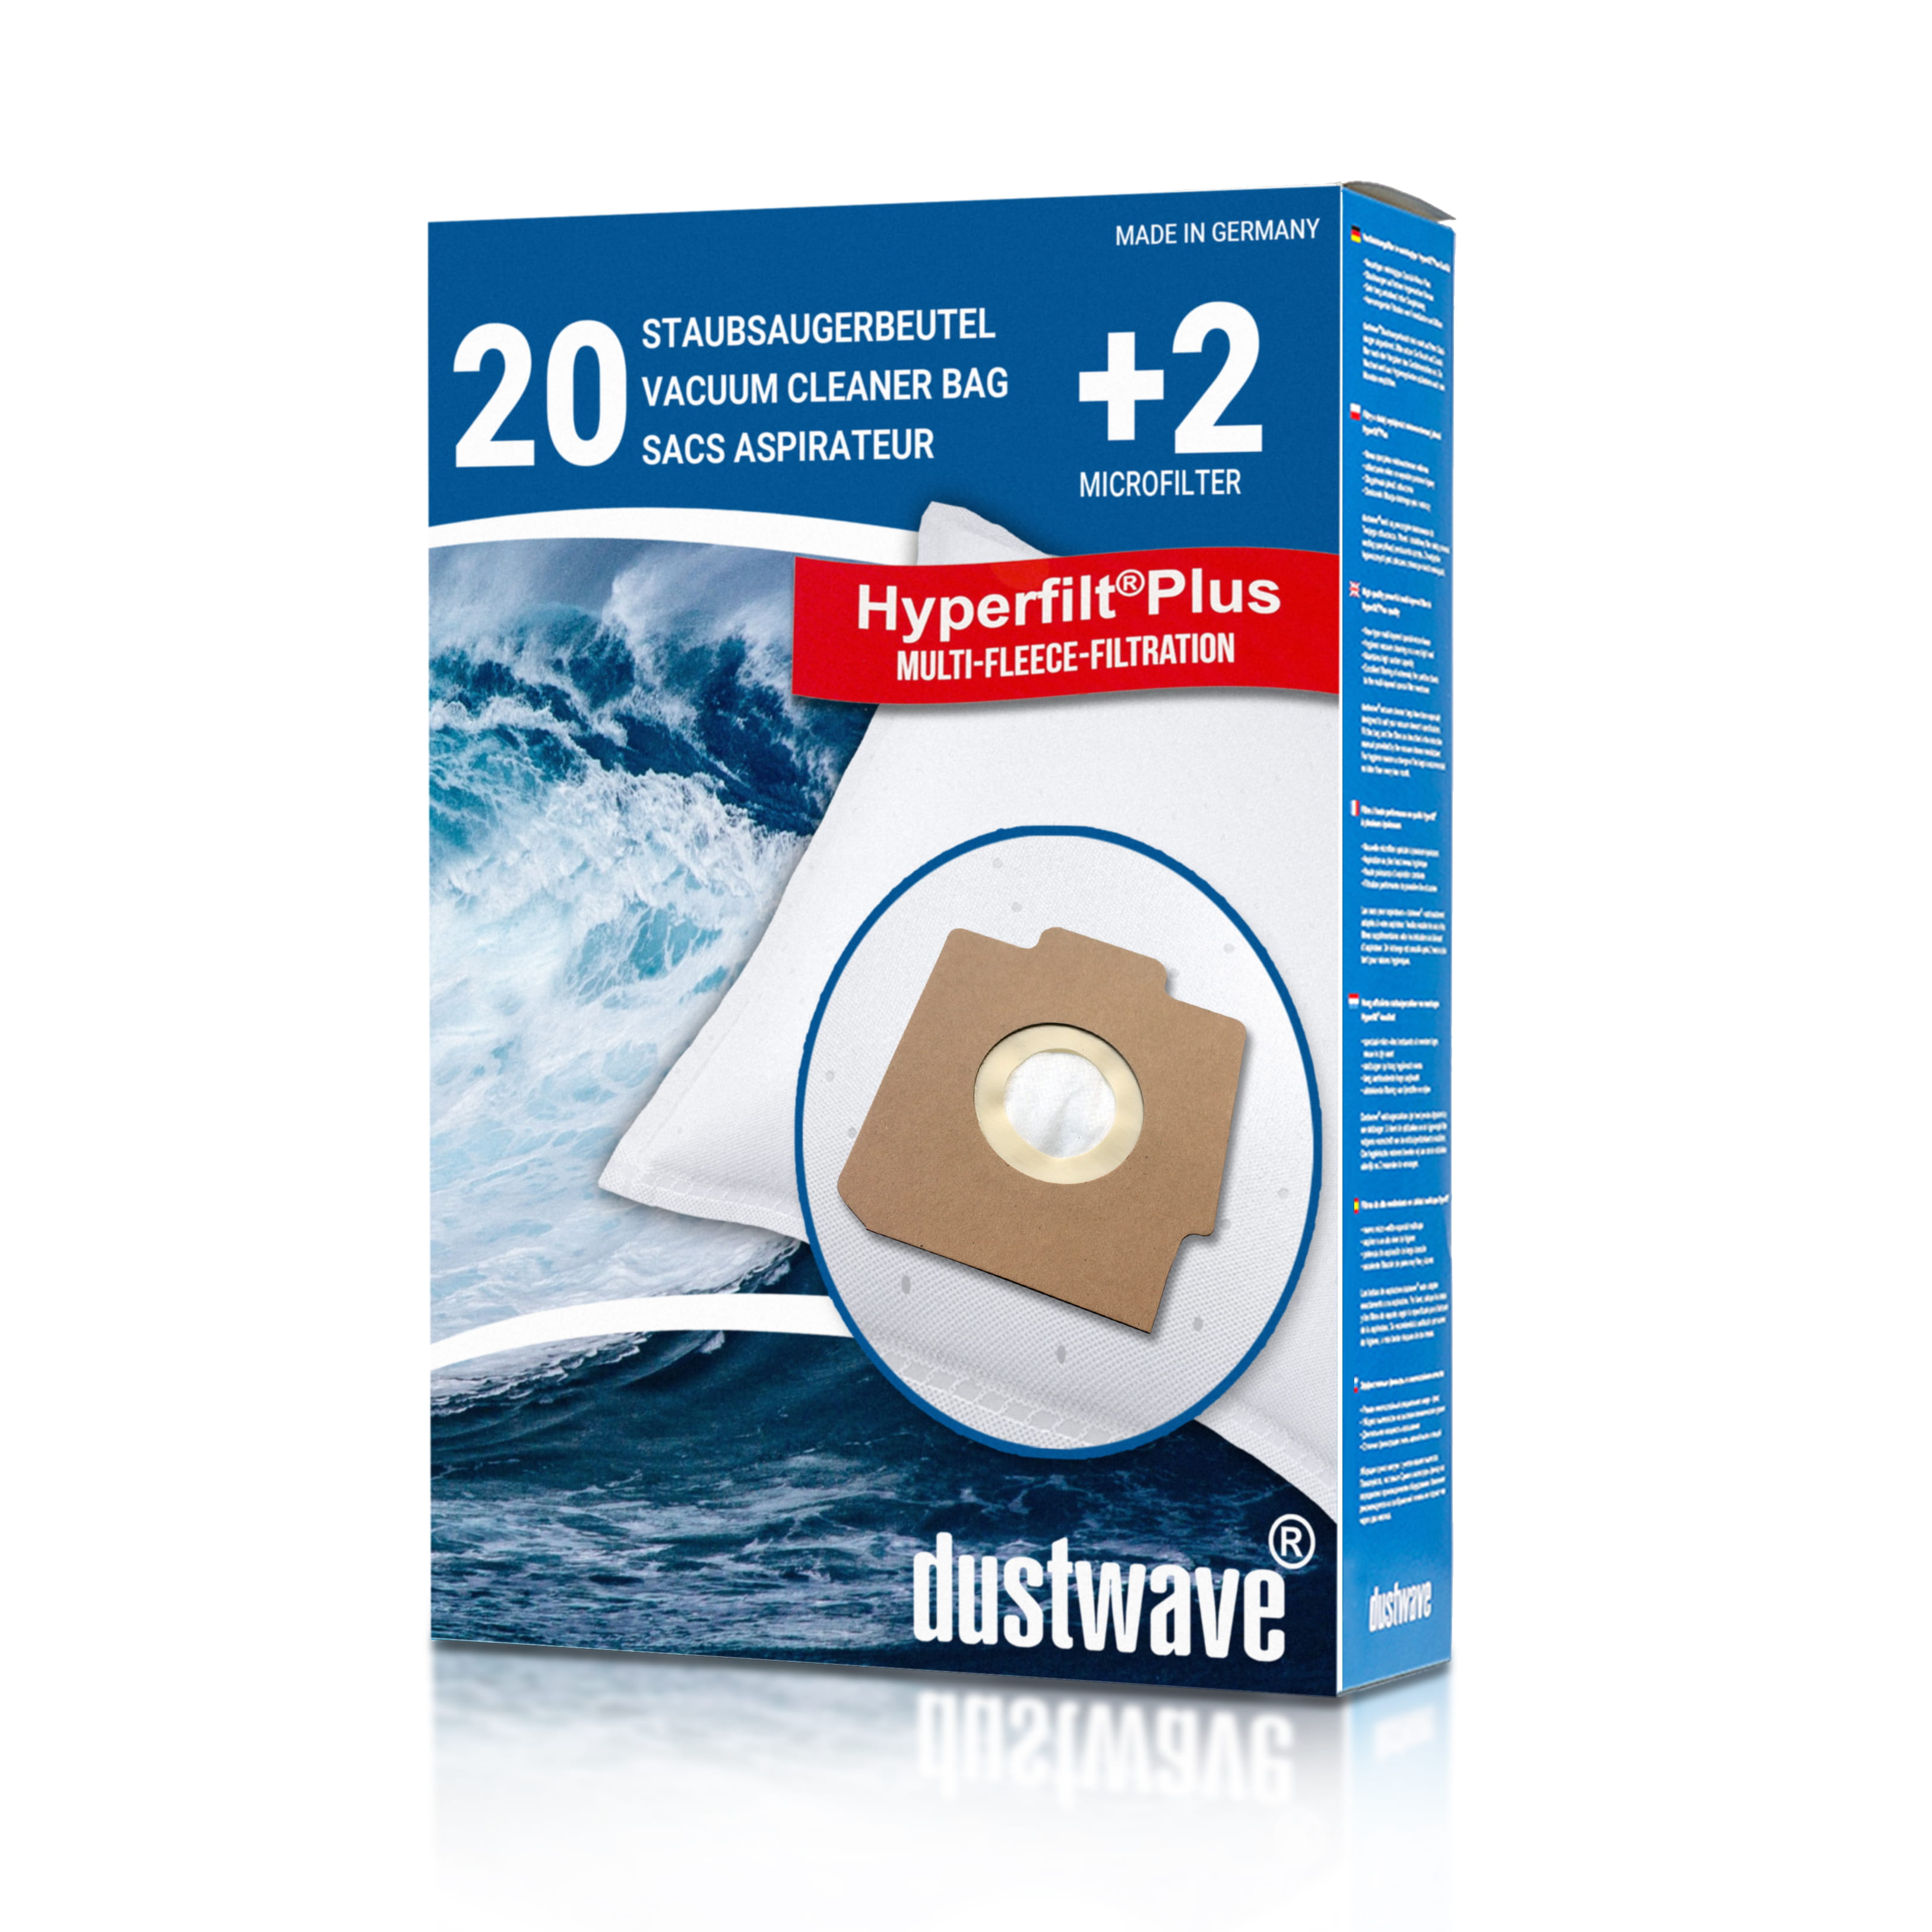 Dustwave® 20 Staubsaugerbeutel für Hoover S3922 / TRS3922 - hocheffizient, mehrlagiges Mikrovlies mit Hygieneverschluss - Made in Germany